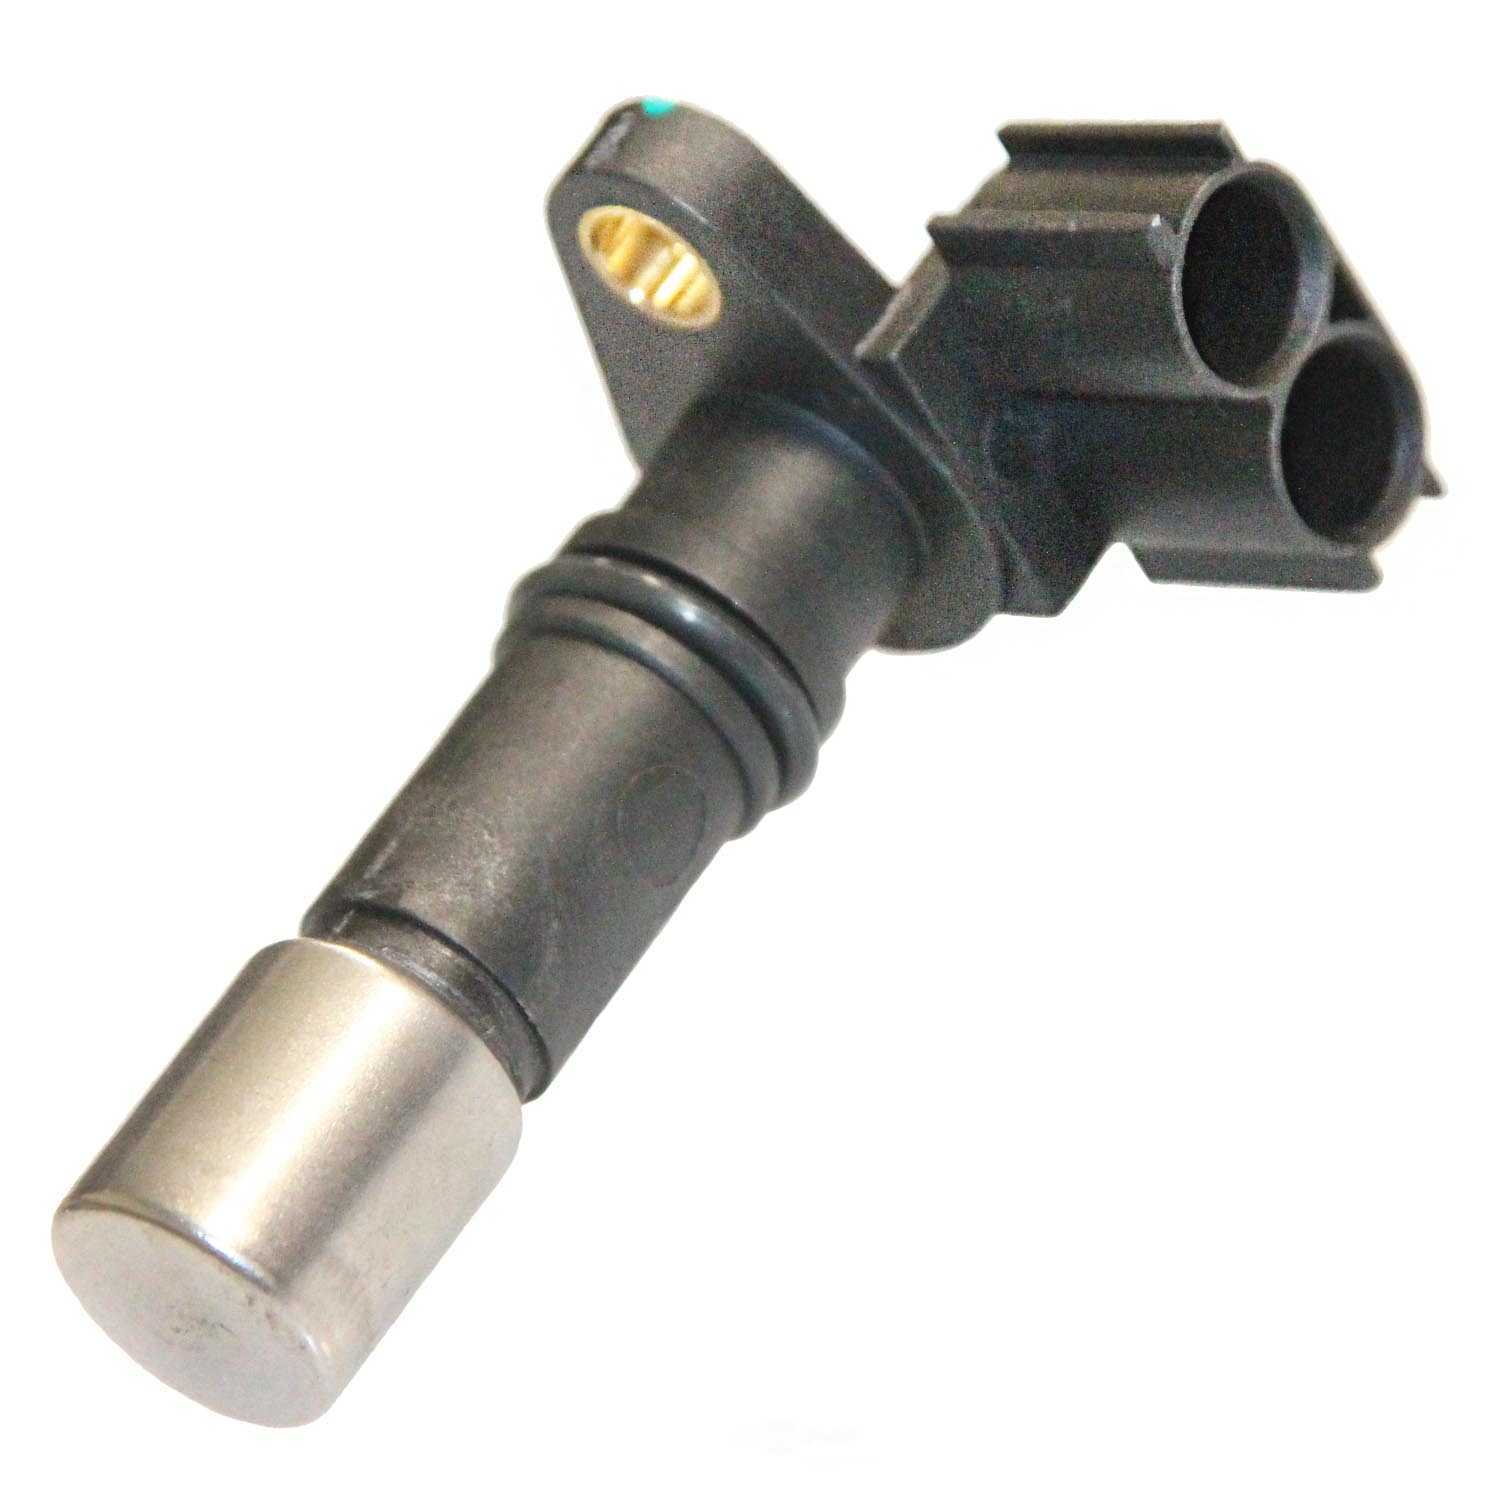 WALKER PRODUCTS, INC. - Engine Crankshaft Position Sensor - Sensor Only - WPI 235-1318